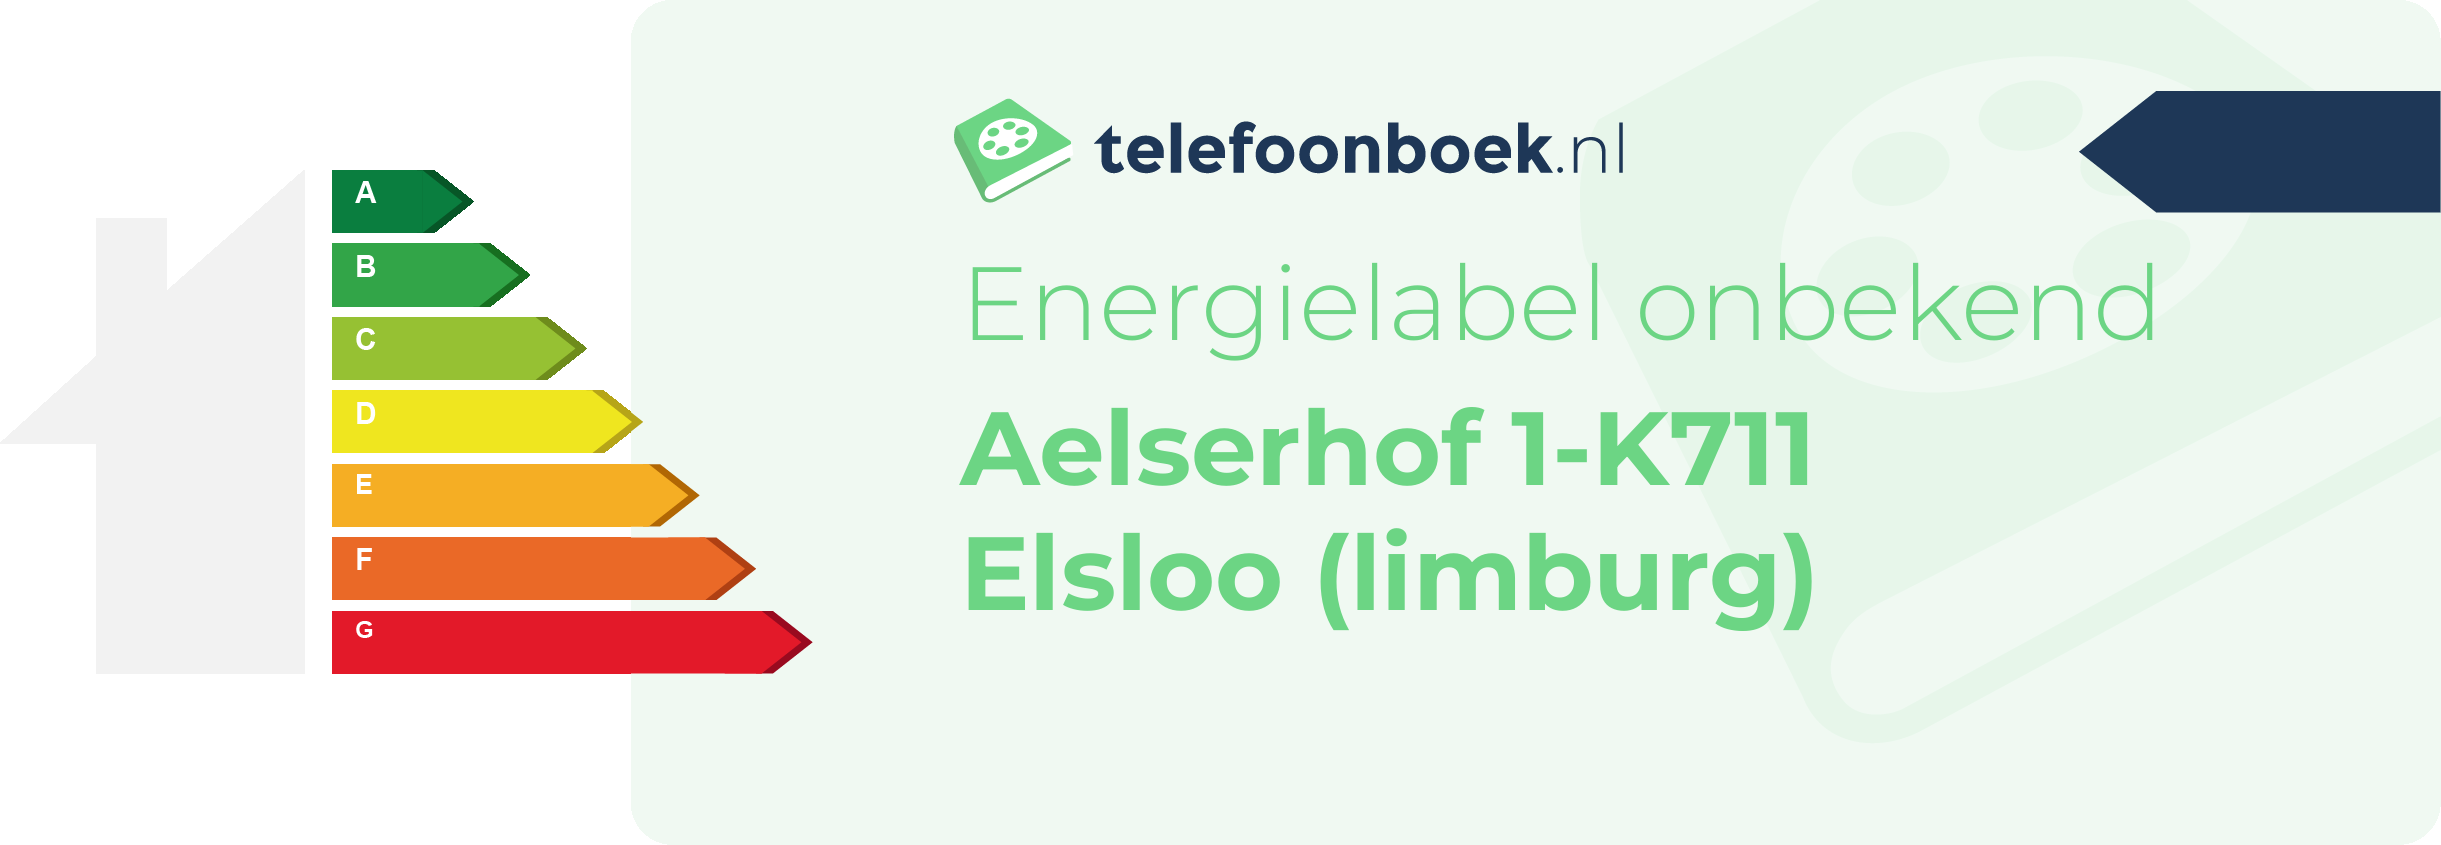 Energielabel Aelserhof 1-K711 Elsloo (Limburg)